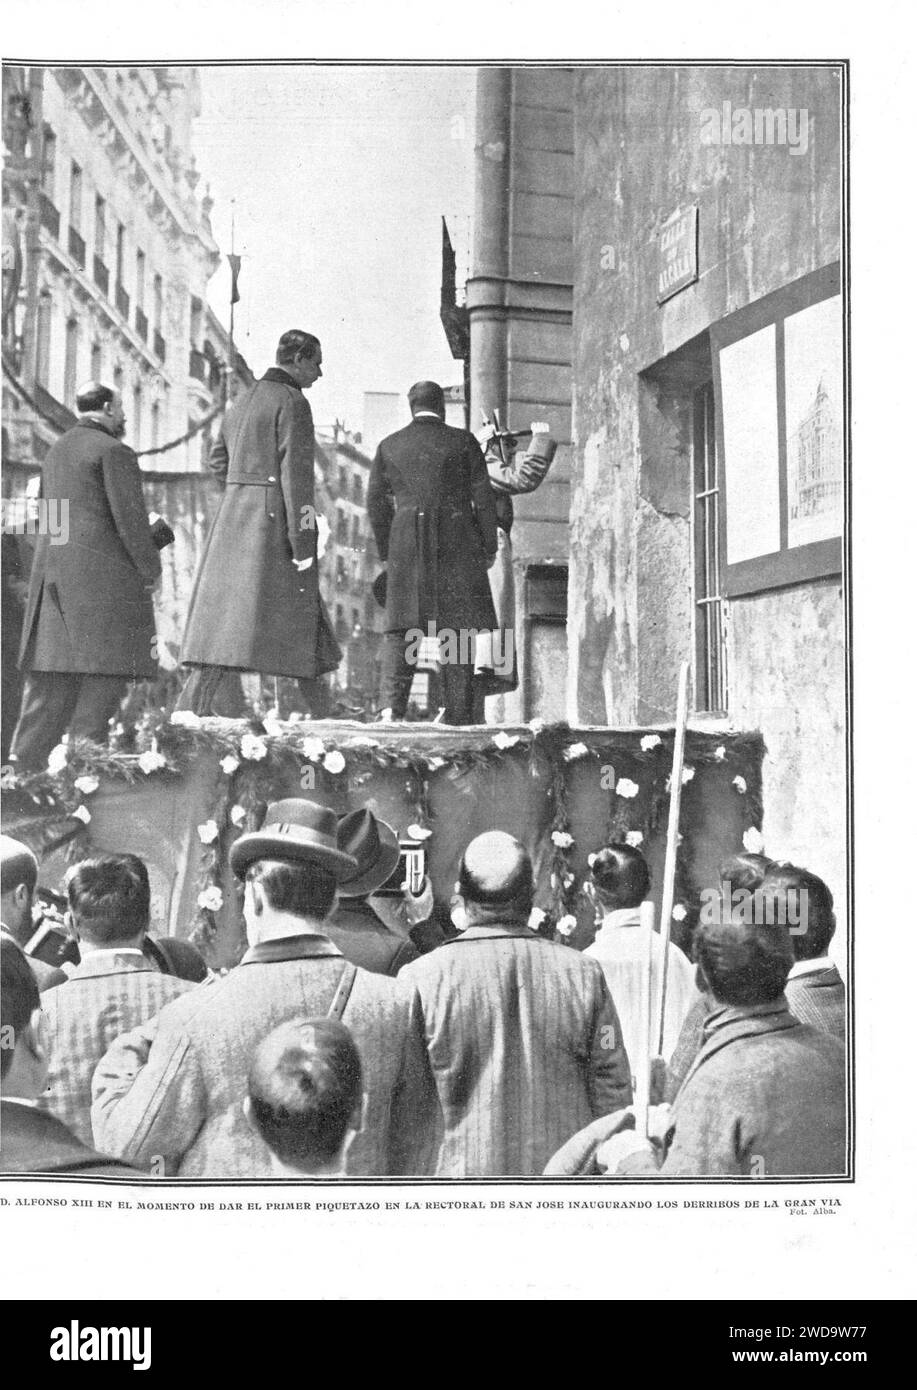 1910-04-07, Actualidades, Alfonso XIII en el momento de dar el primer piquetazo en la rectoral de San José inaugurando los derribos de la Gran Vía, Alba. Stock Photo